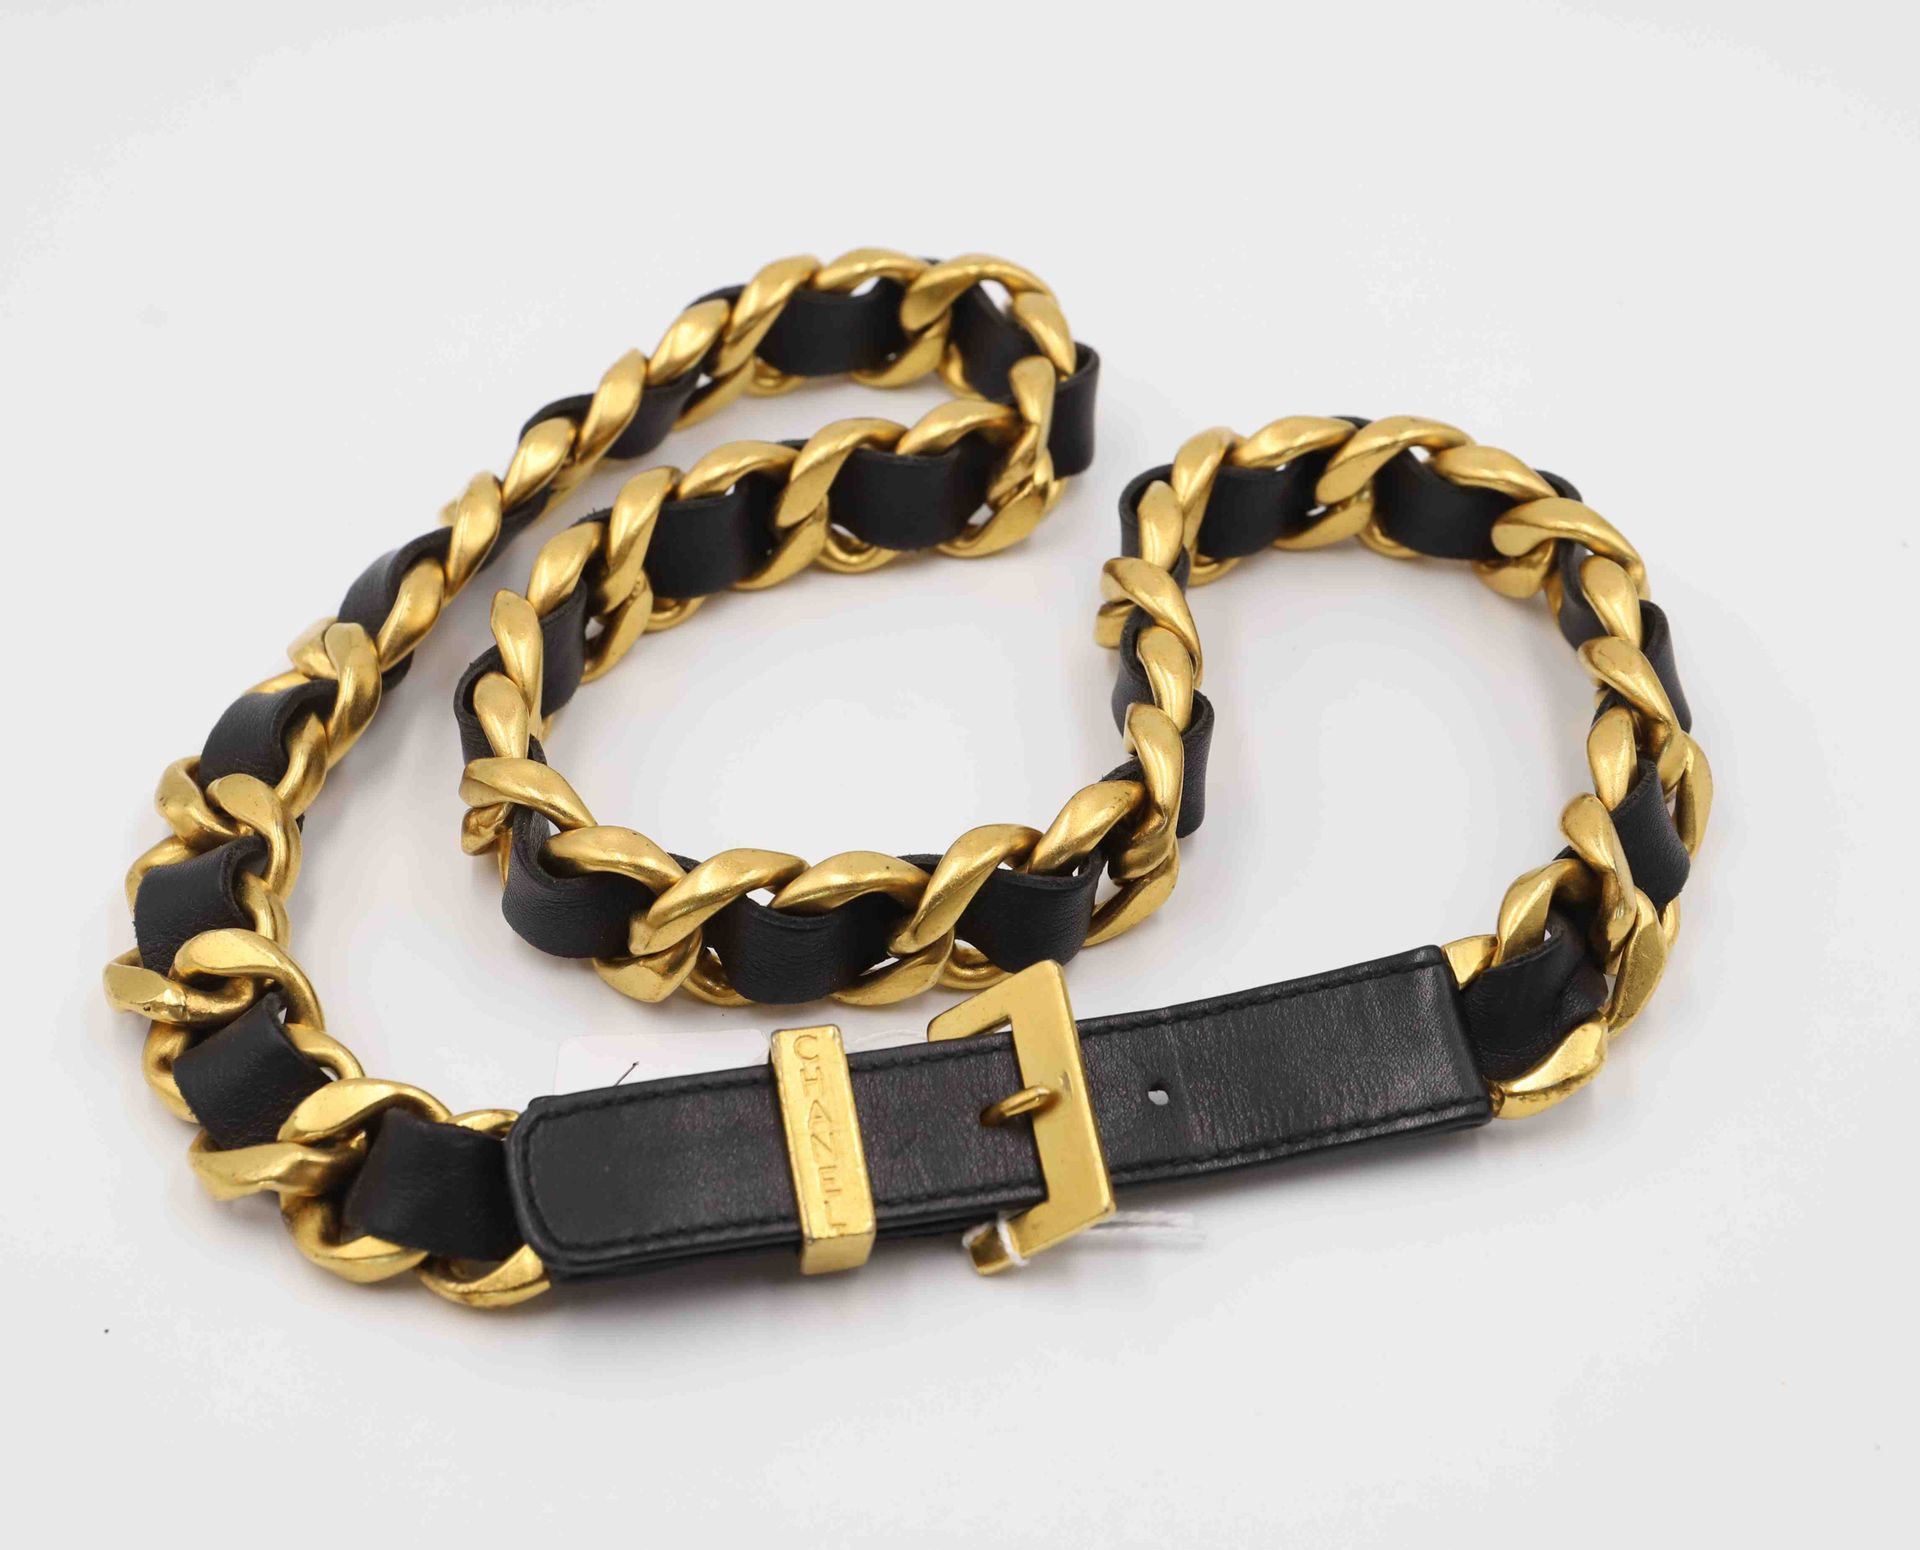 Null Cinturón CHANEL
Cuero y cadena de metal dorado
Tamaño: 80